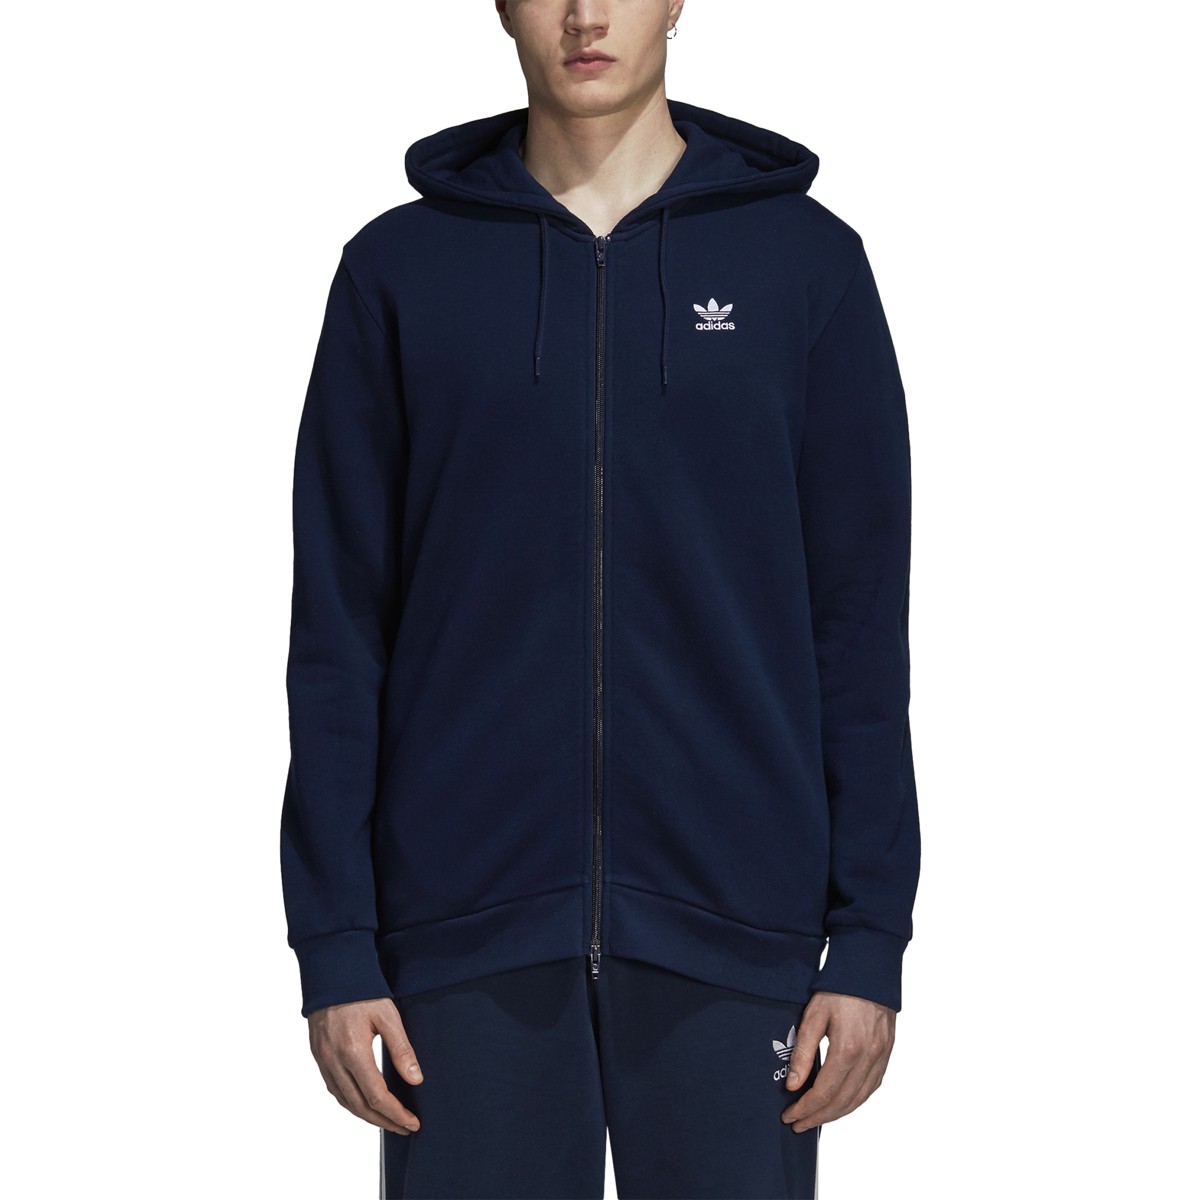 Vertellen potlood vals Adidas Men's Originals Trefoil Full Zip Fleece Hoodie Collegiate Navy  DS9896 | eBay